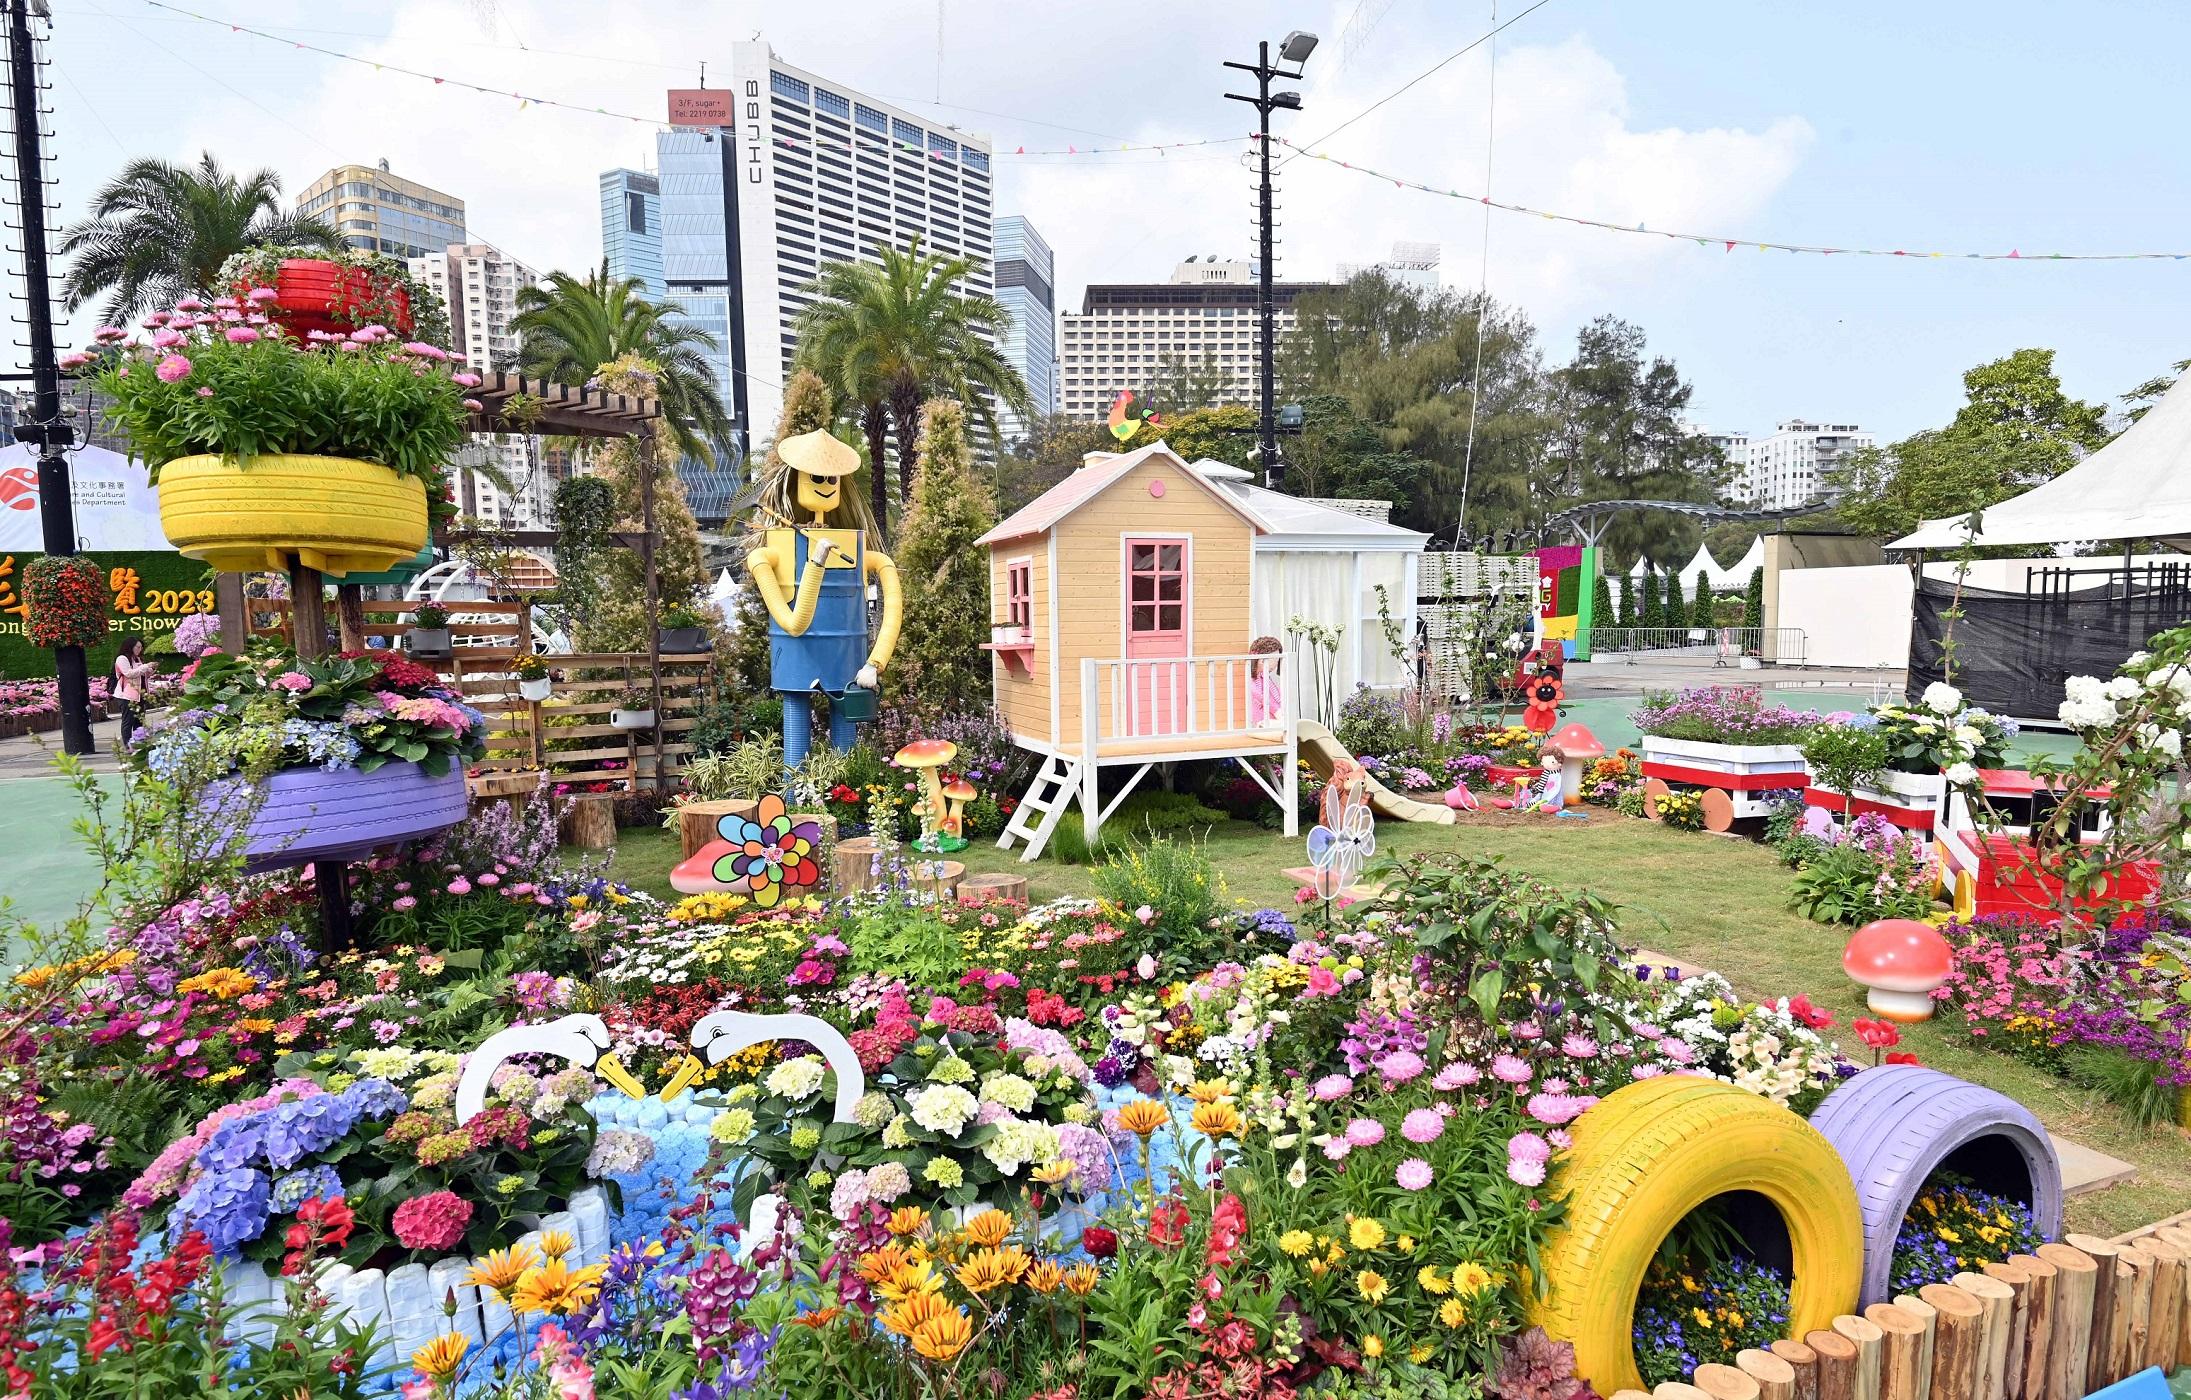 二零二三年香港花卉展覽（花展）現於維多利亞公園舉行，場內展出花展其中一項活動——十八區東方園圃及西方園圃比賽的得獎作品。圖示西方園圃環保優勝獎：南區的「童心園」。